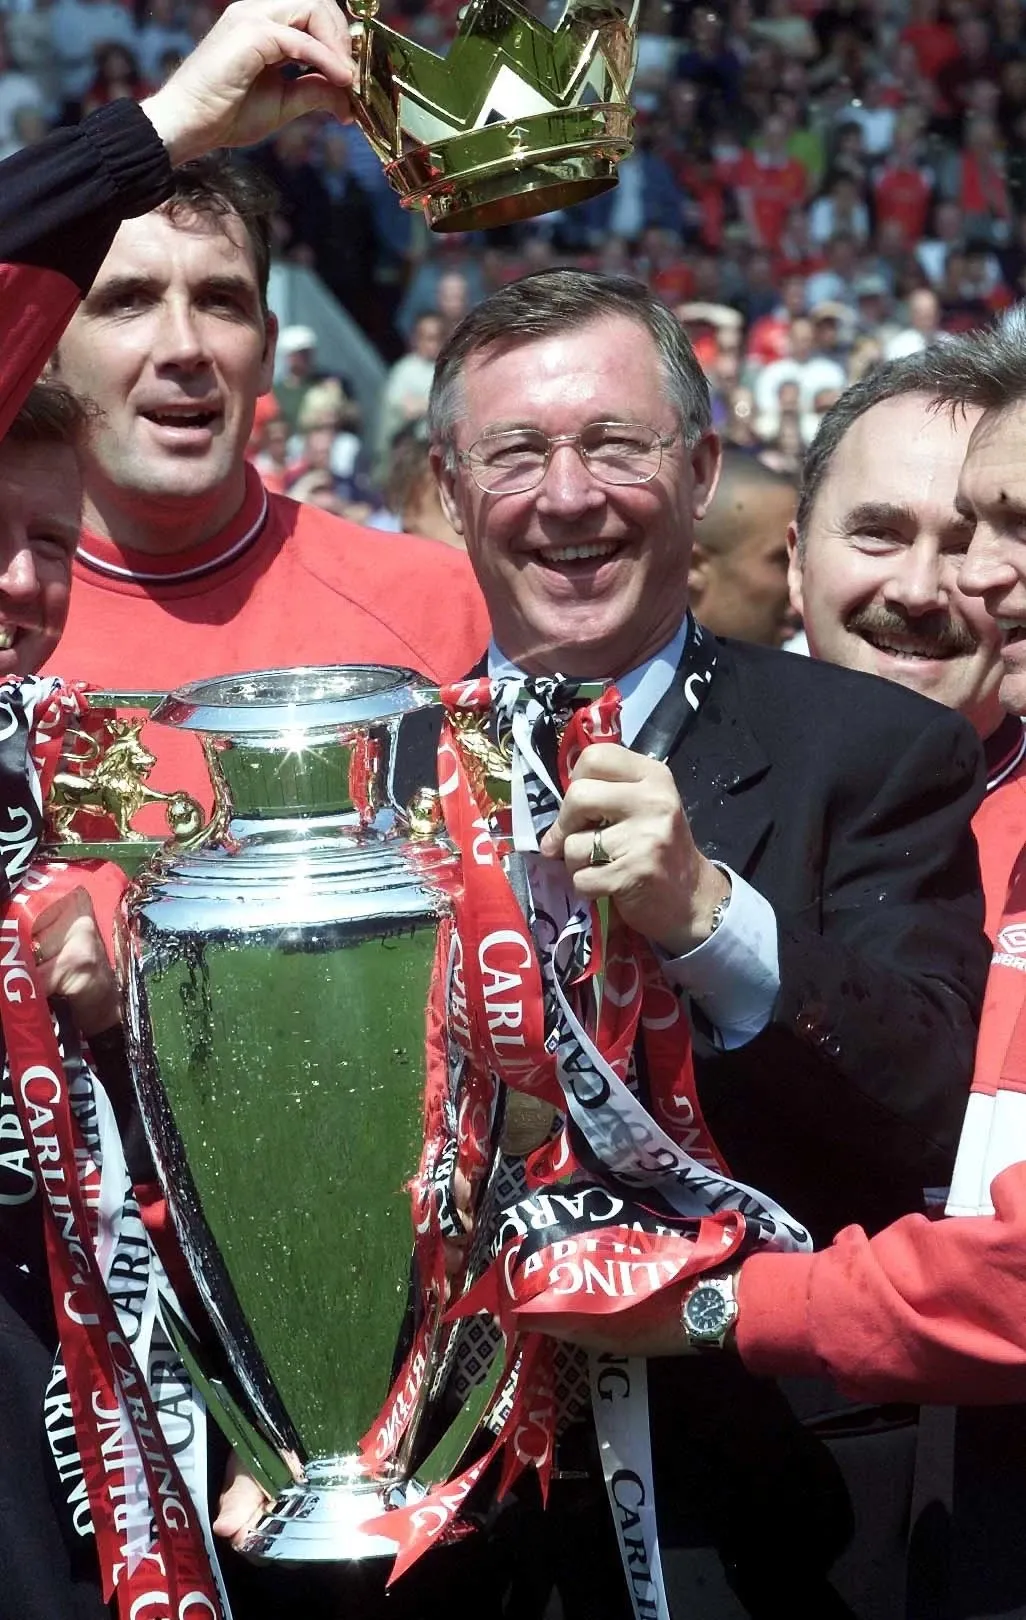 Sir Alex Ferguson lifts the Premier League trophy